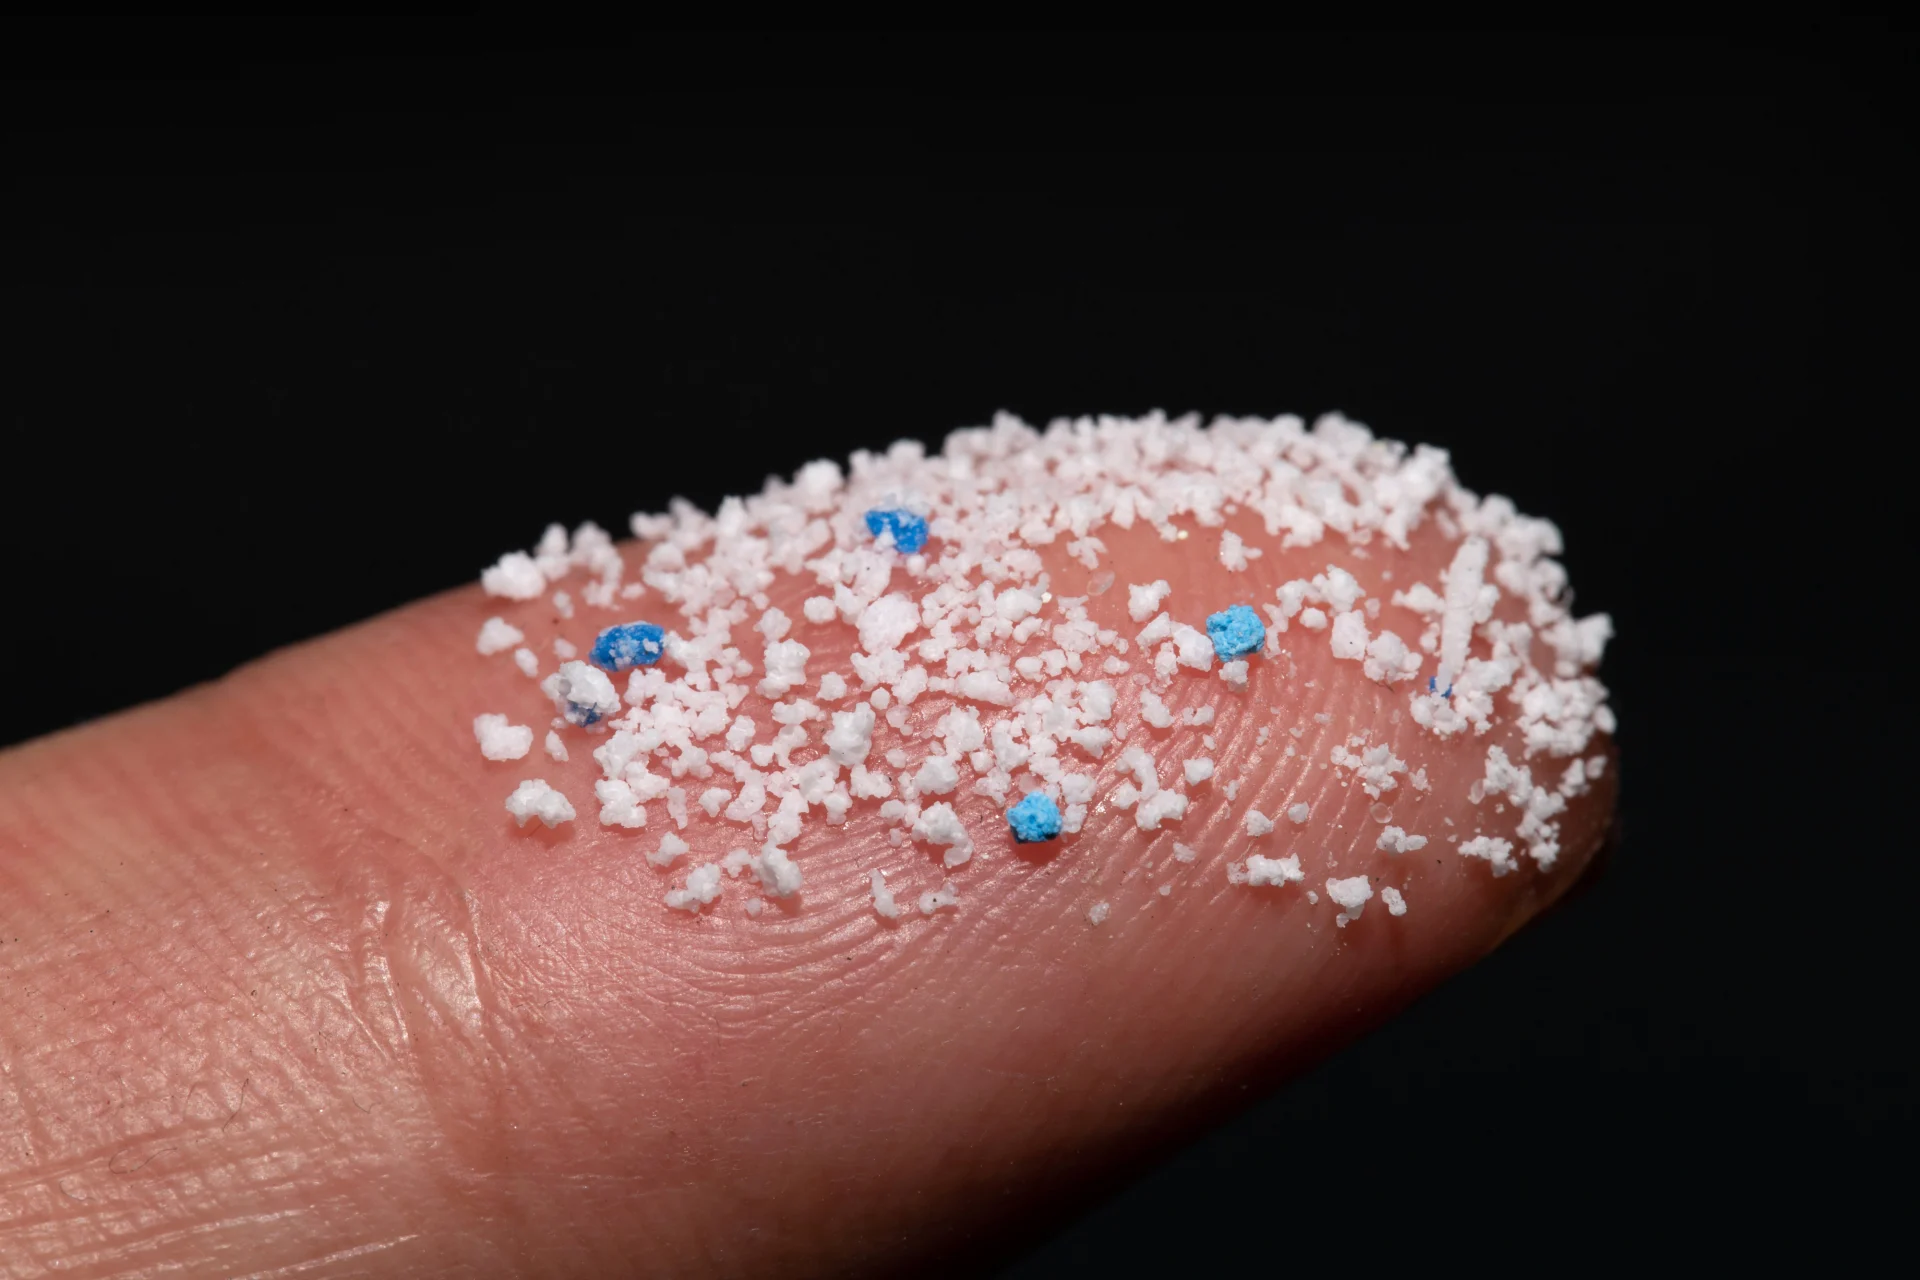 Mikroplastik in verschiedenen Farben auf einer Fingerspitze